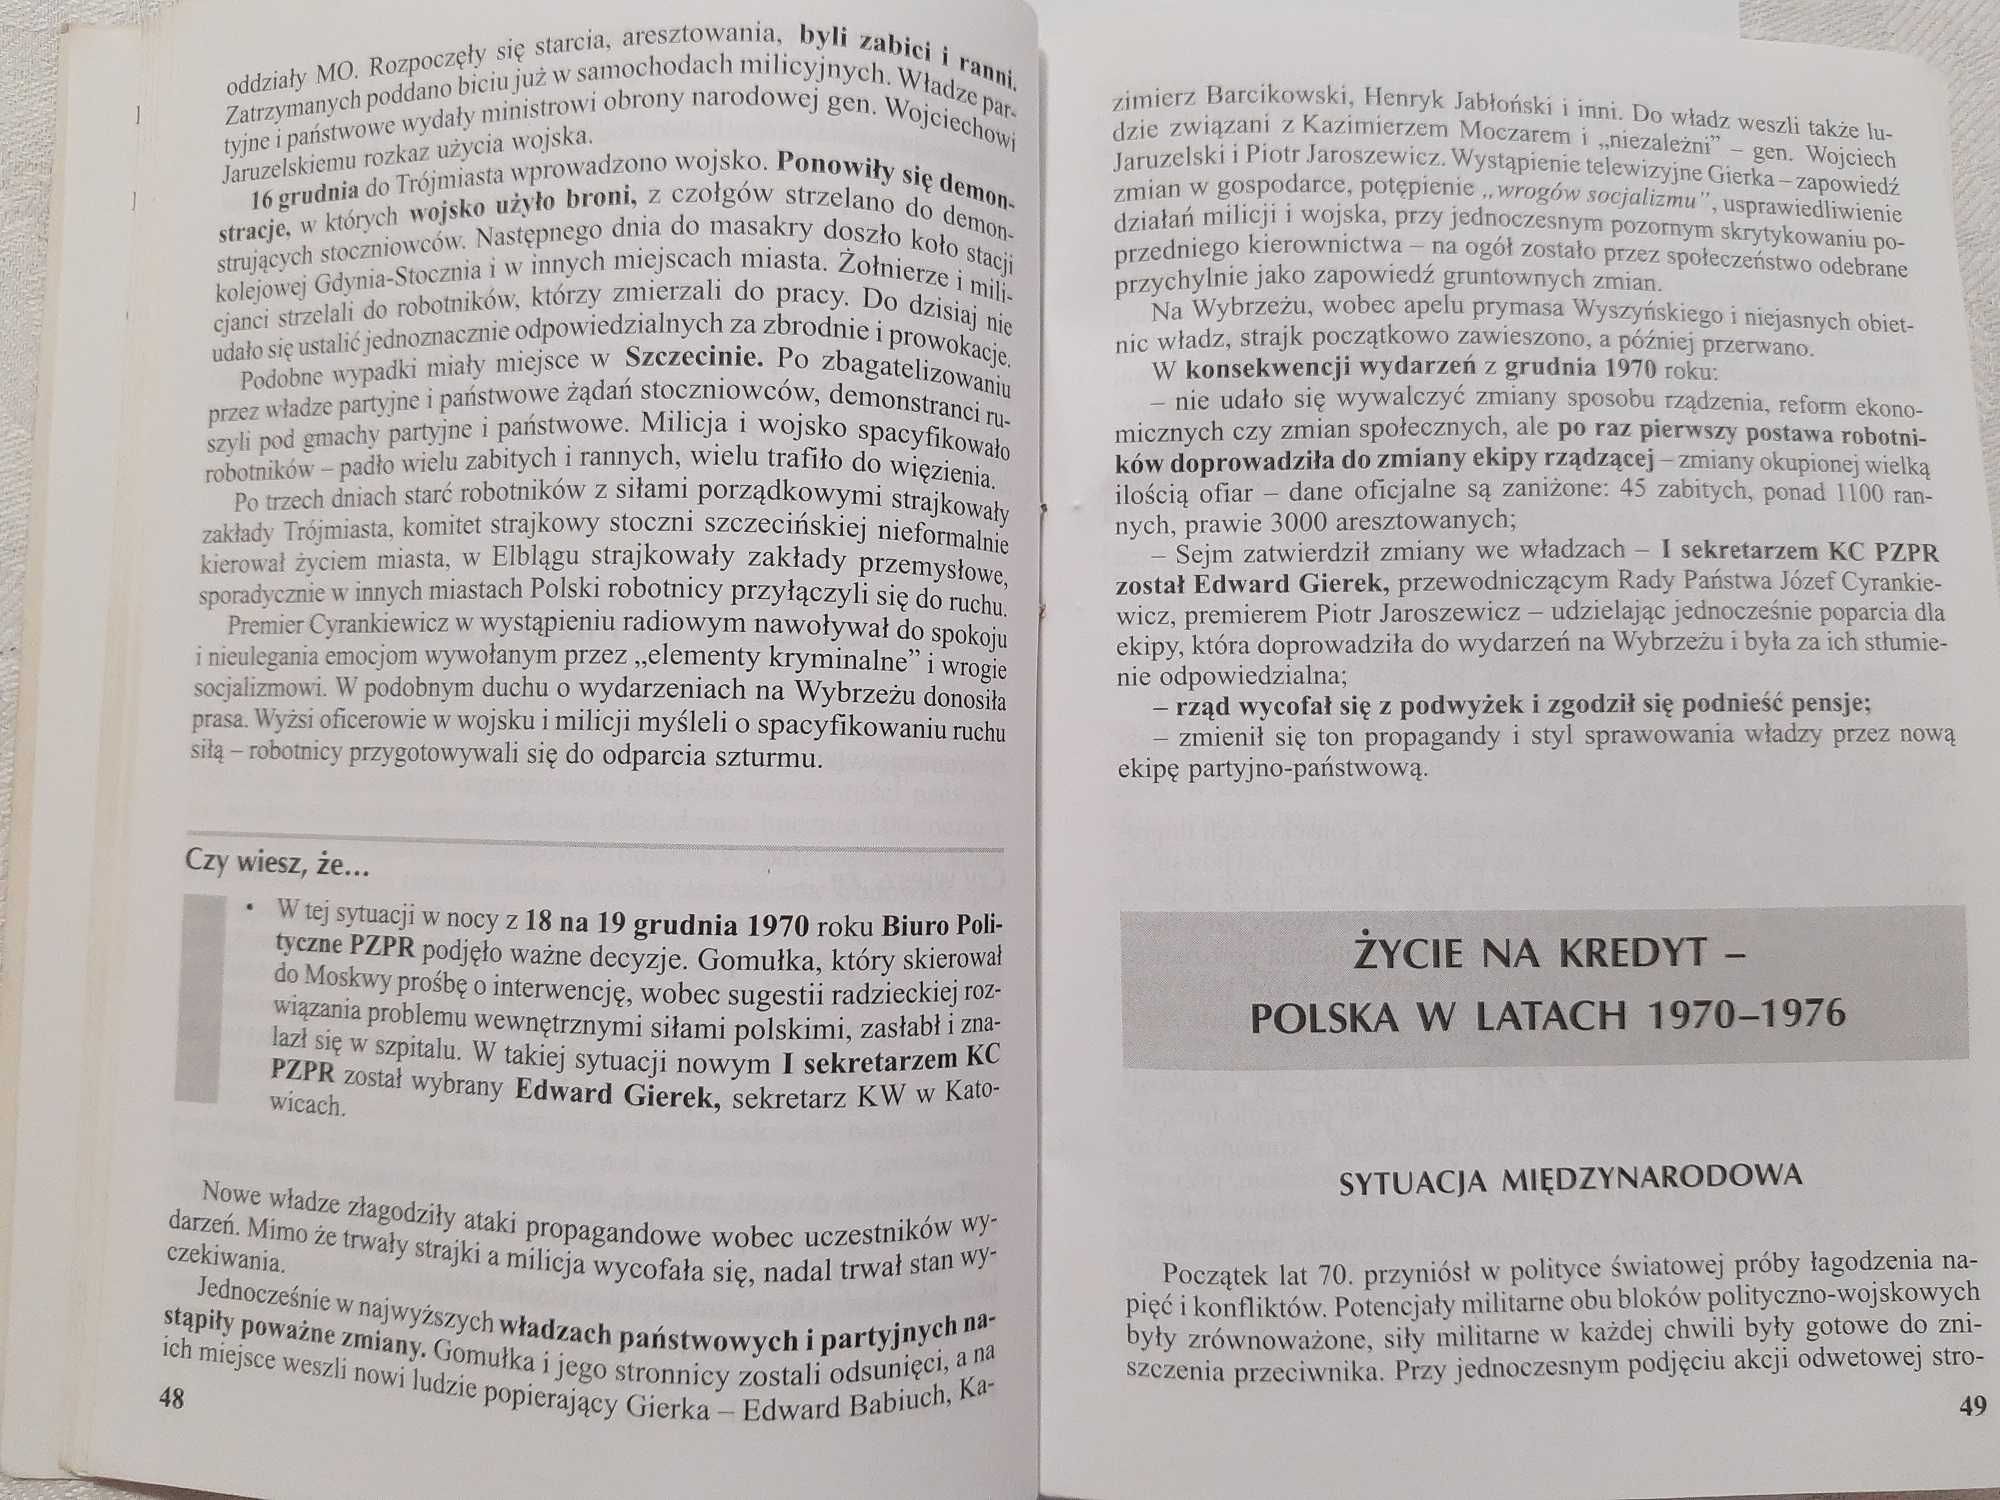 Ściąga cz. 4b - Historia lata 1945 - 1990